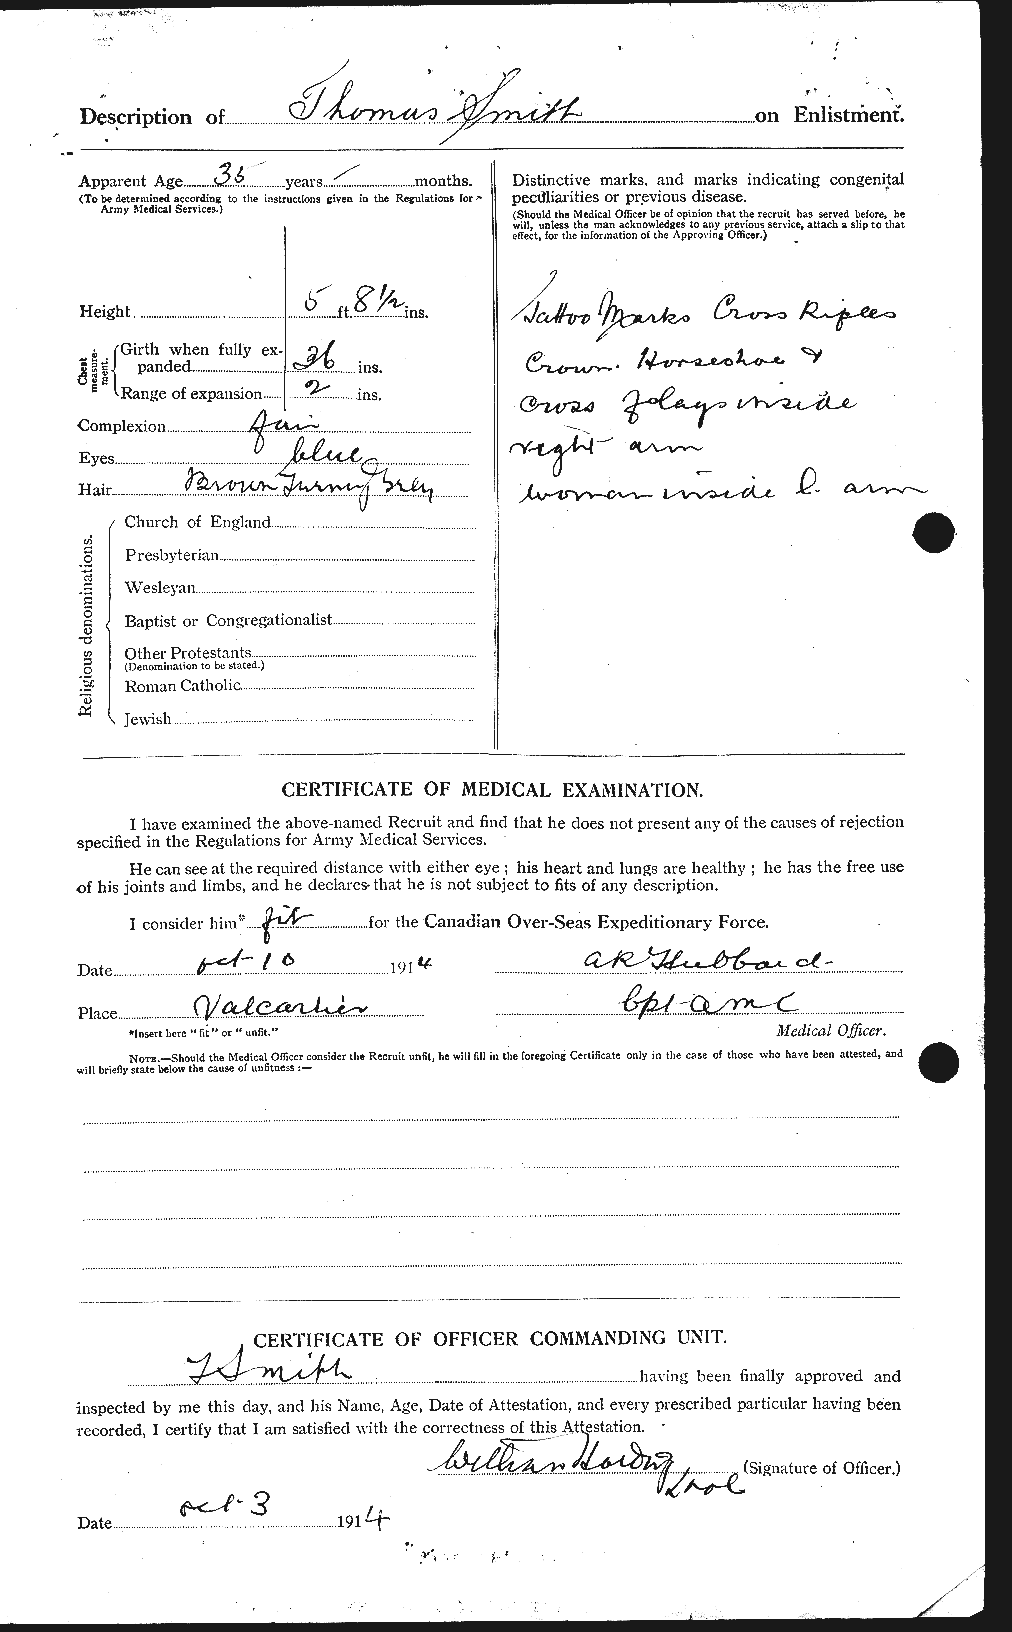 Dossiers du Personnel de la Première Guerre mondiale - CEC 554923b